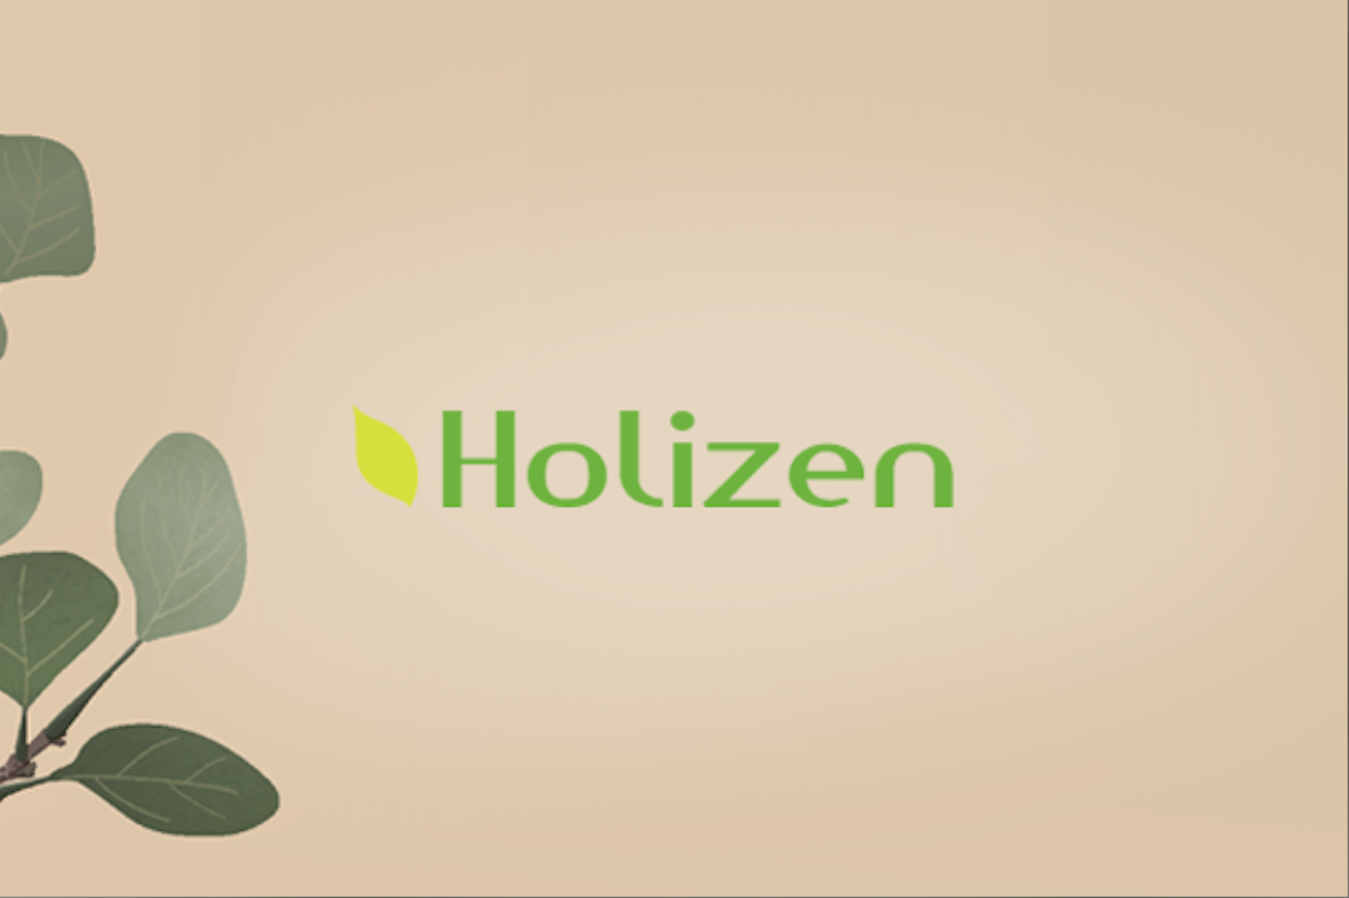 Holizen Tonics & Herbal Supplements